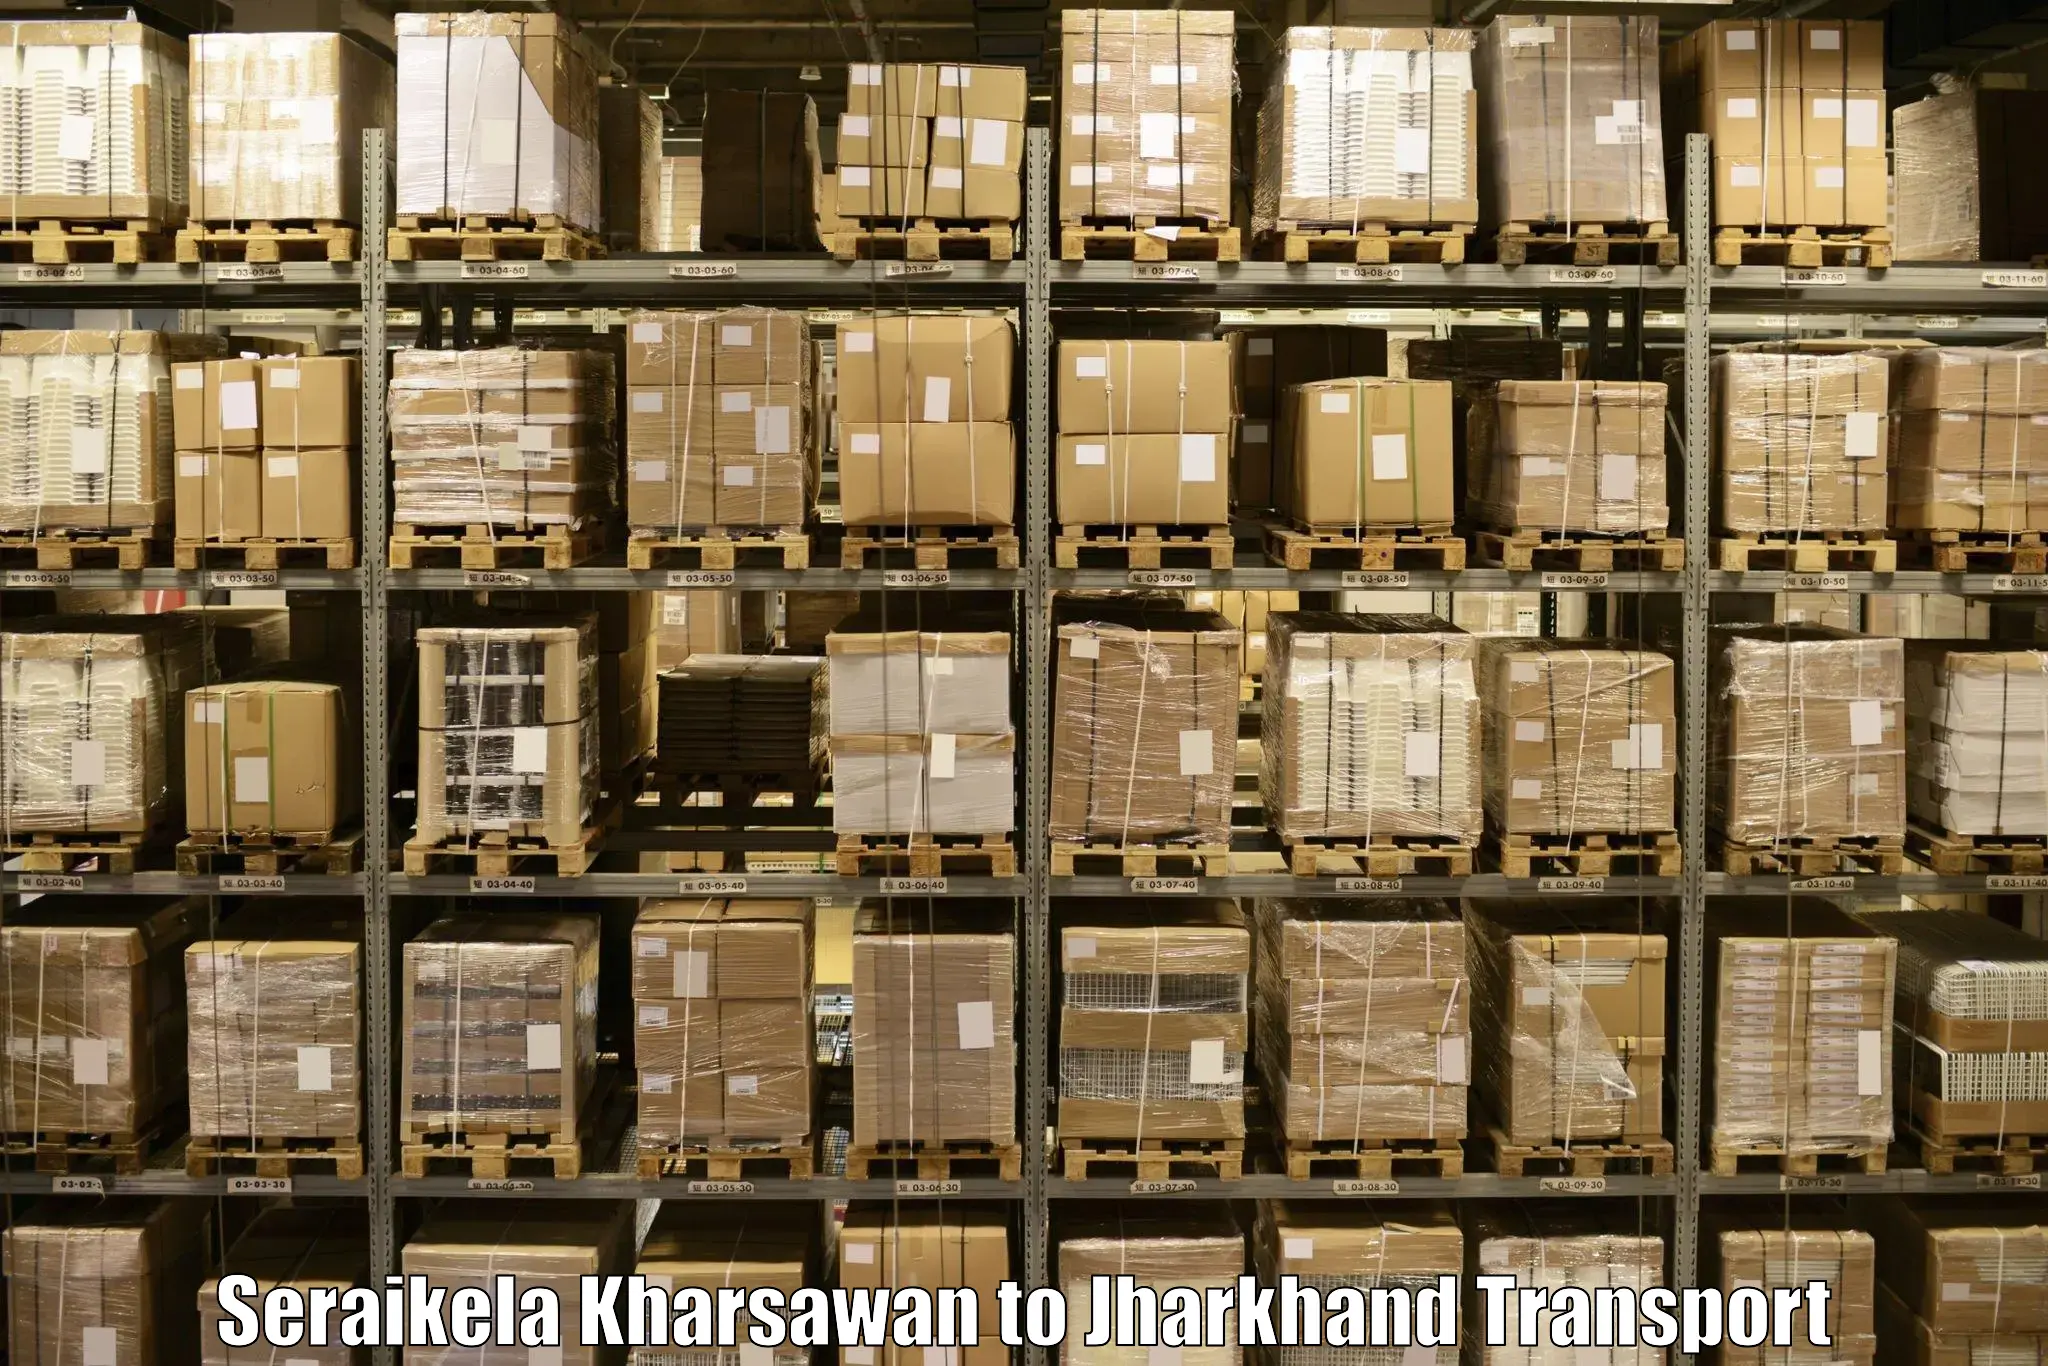 Daily parcel service transport Seraikela Kharsawan to Bokaro